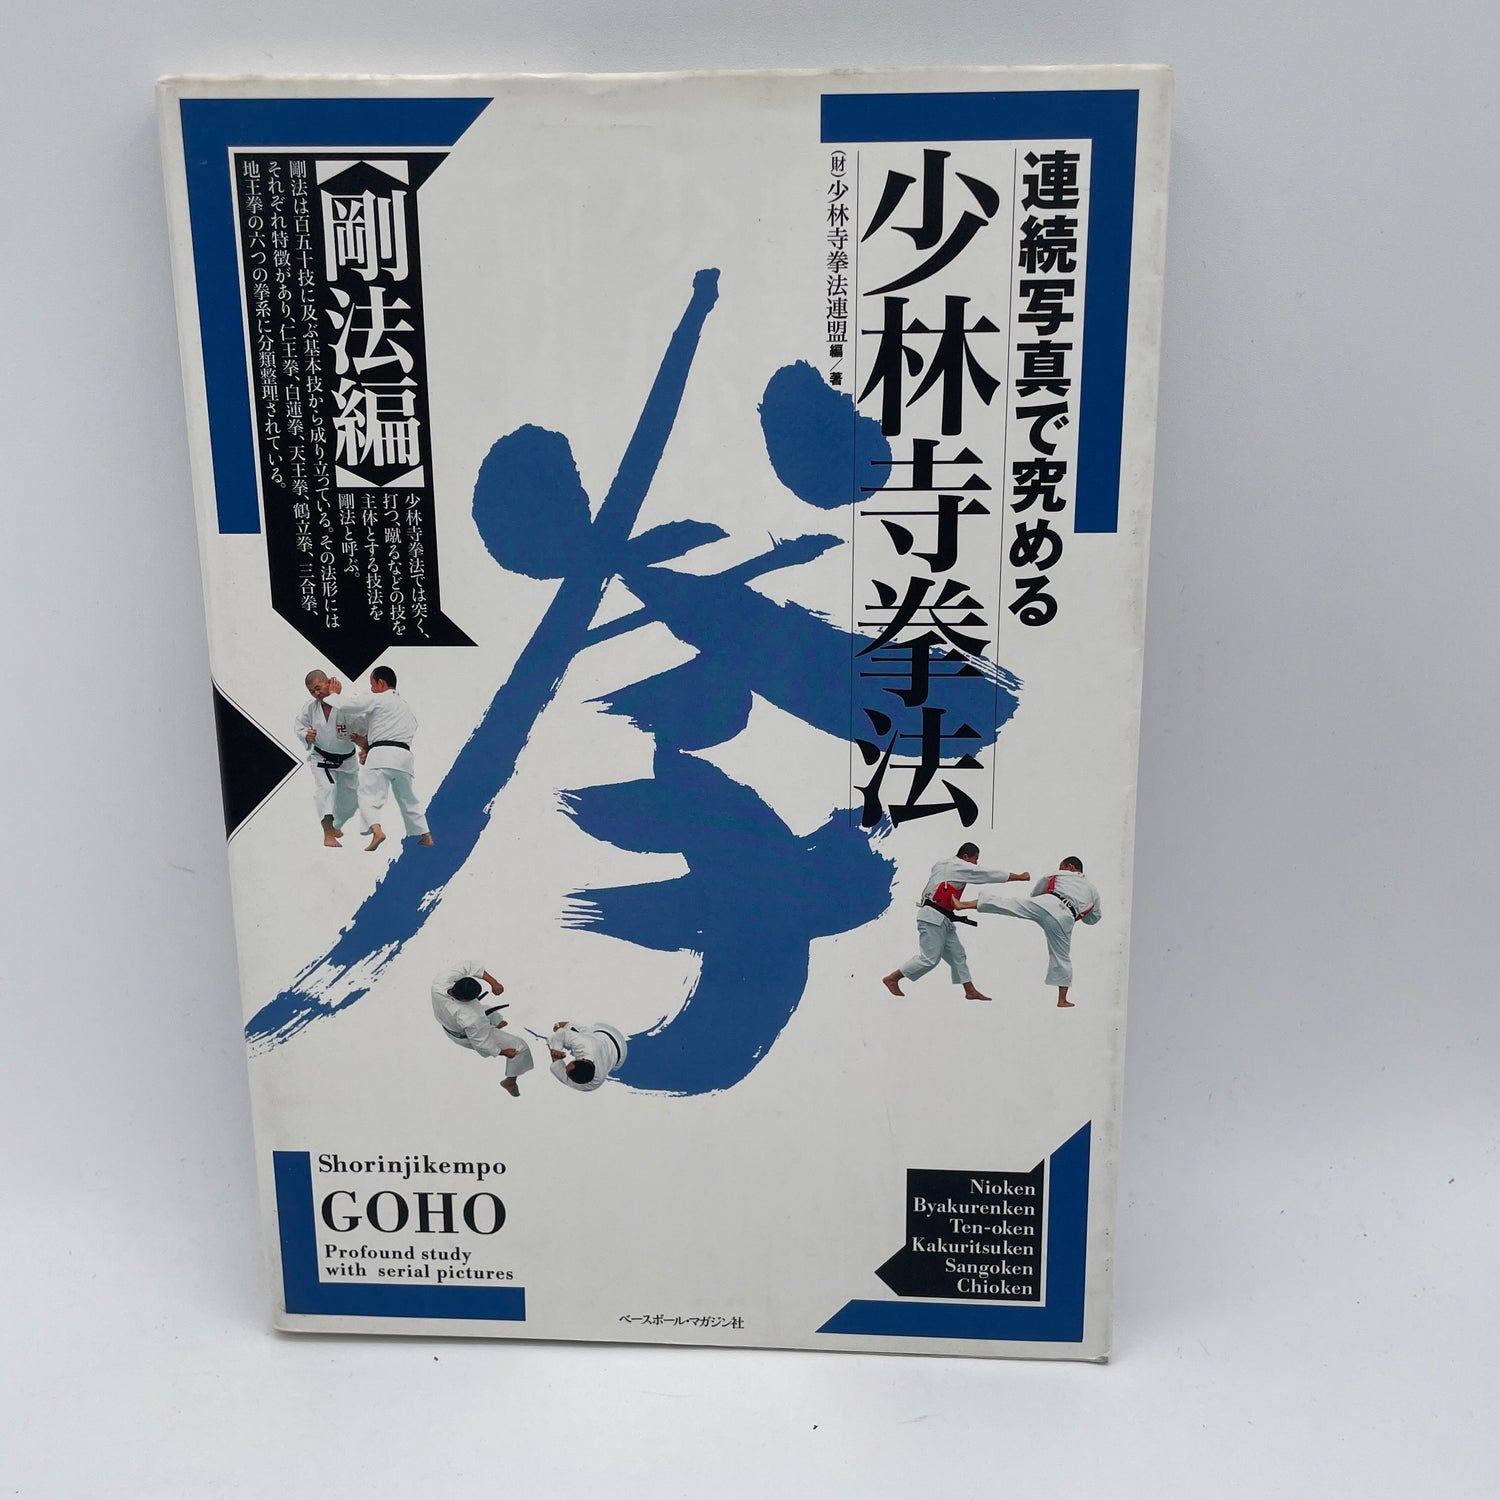 Libro Shorinji Kempo Goho (seminuevo)